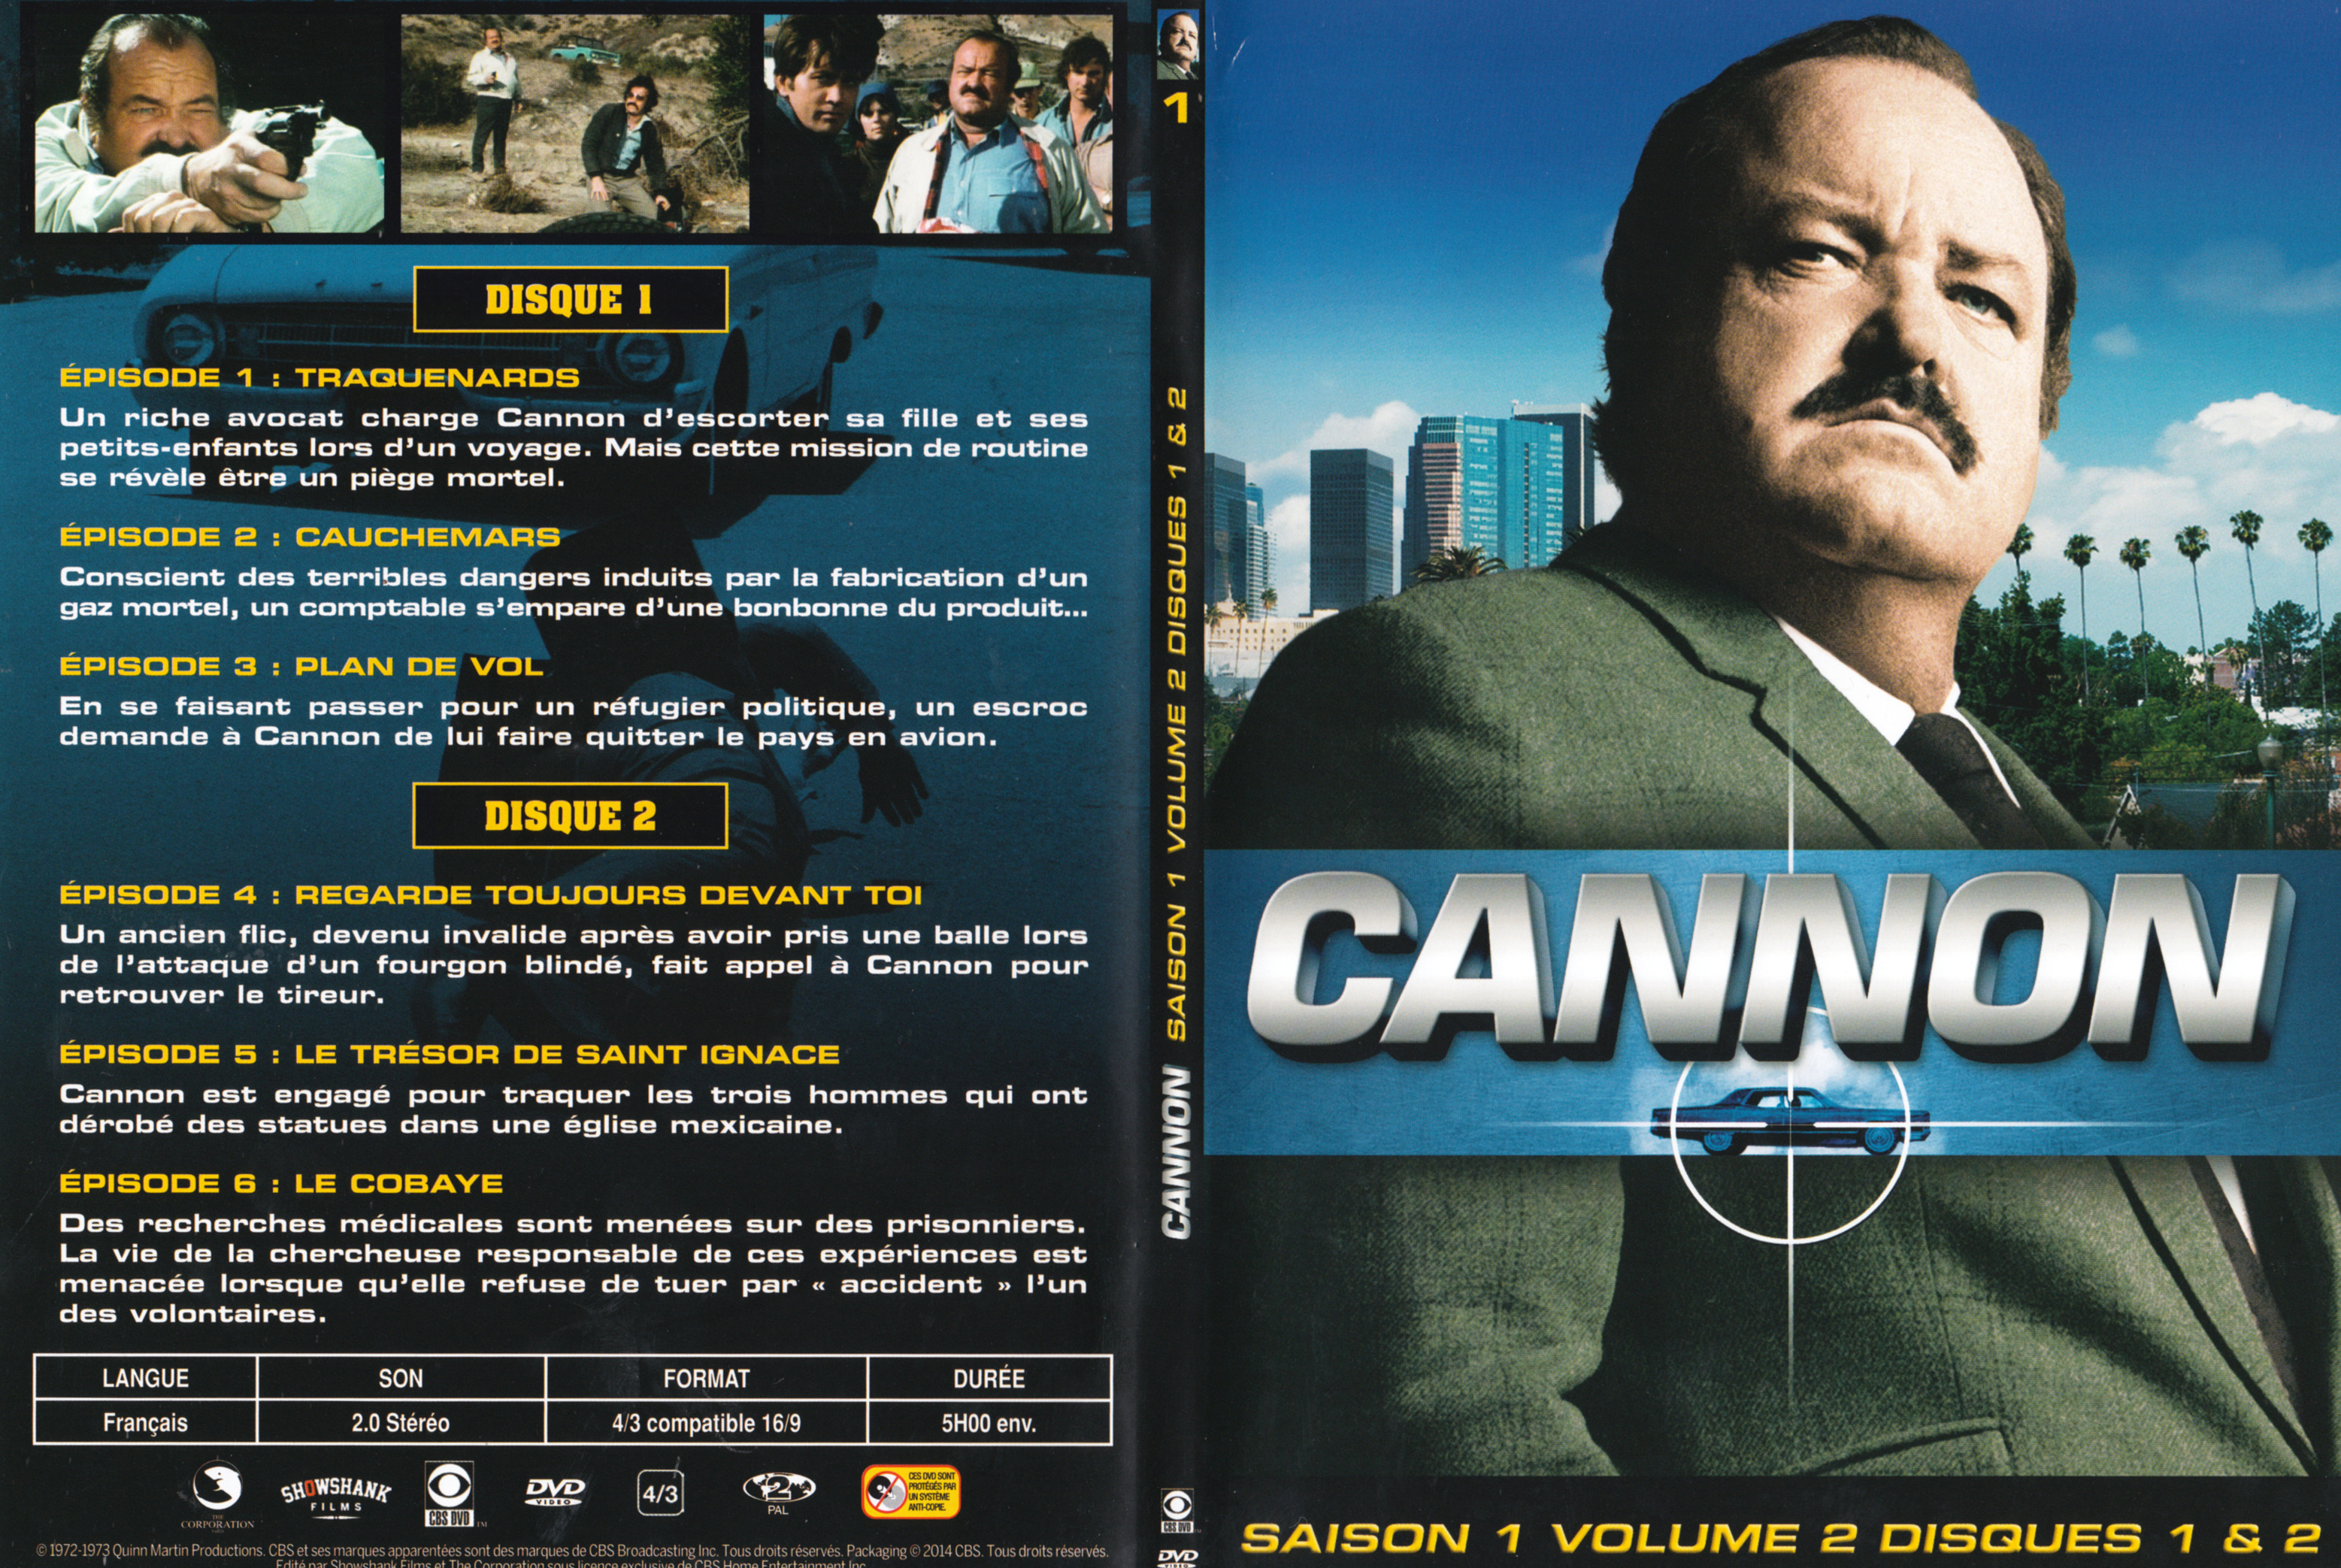 Jaquette DVD Cannon Saison 1 Vol 2 DVD 1